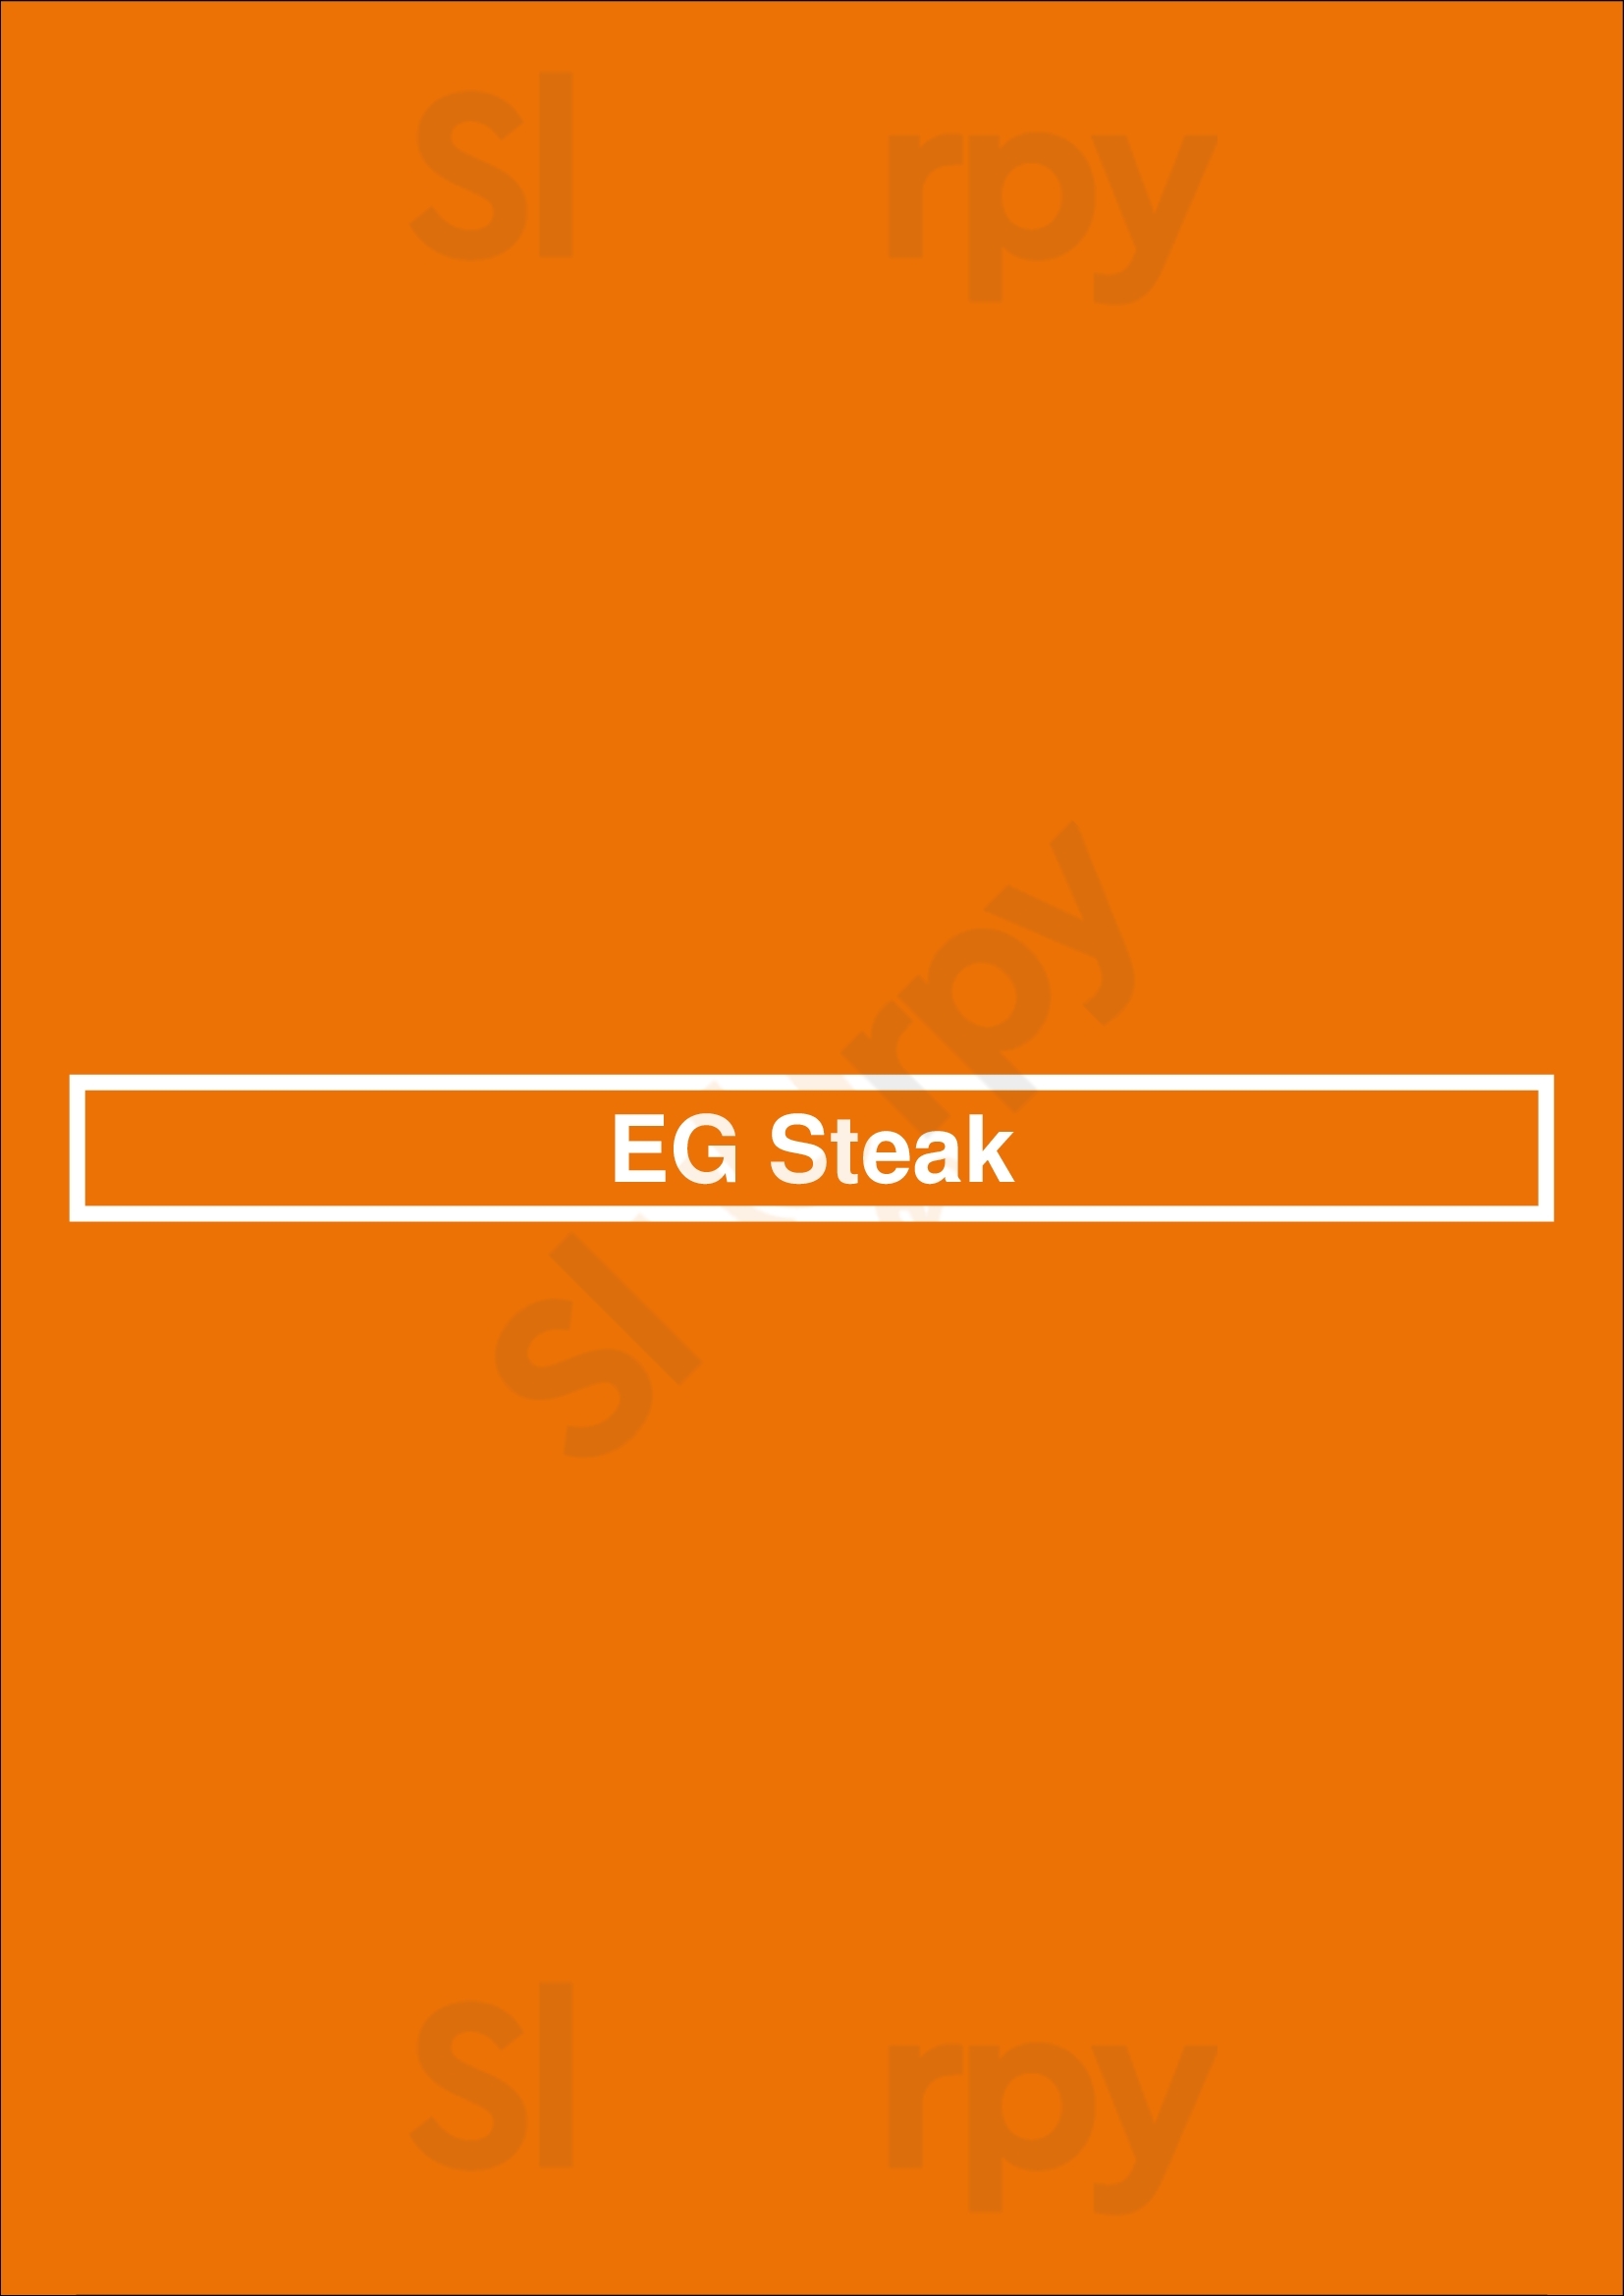 Eg Steak Frisco Menu - 1